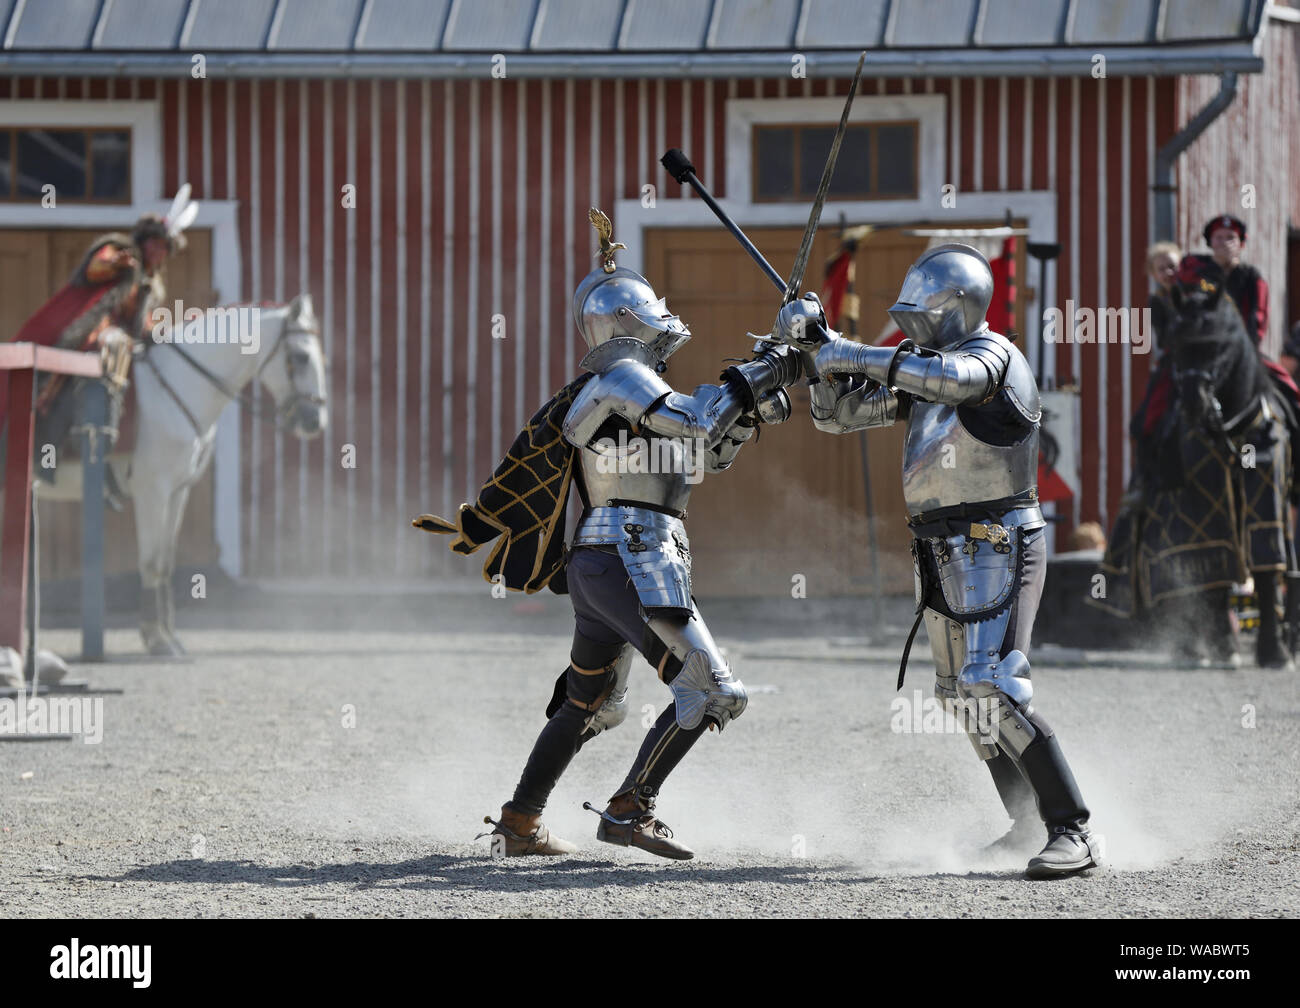 Hameenlinna Finlande 08/17/2019 fête médiévale avec artisan, chevaliers et des amuseurs publics. Deux chevaliers en combats du faisceau sur un terrain poussiéreux. Banque D'Images